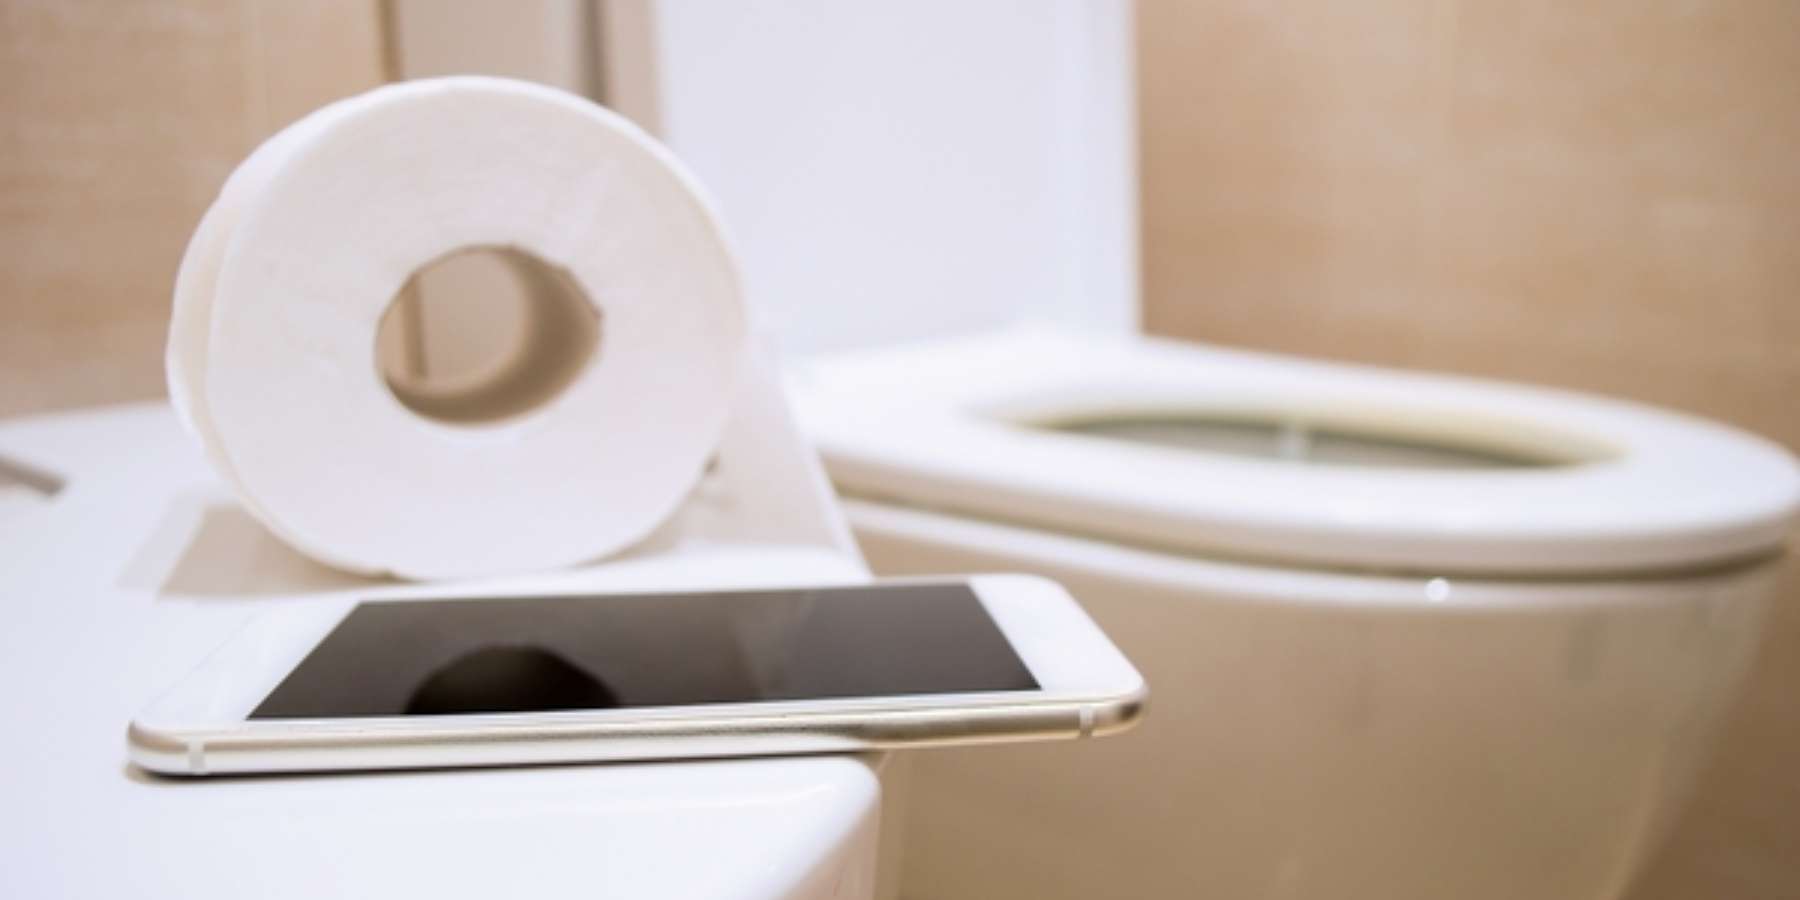 Usar el celular en el baño te puede provocar diarrea